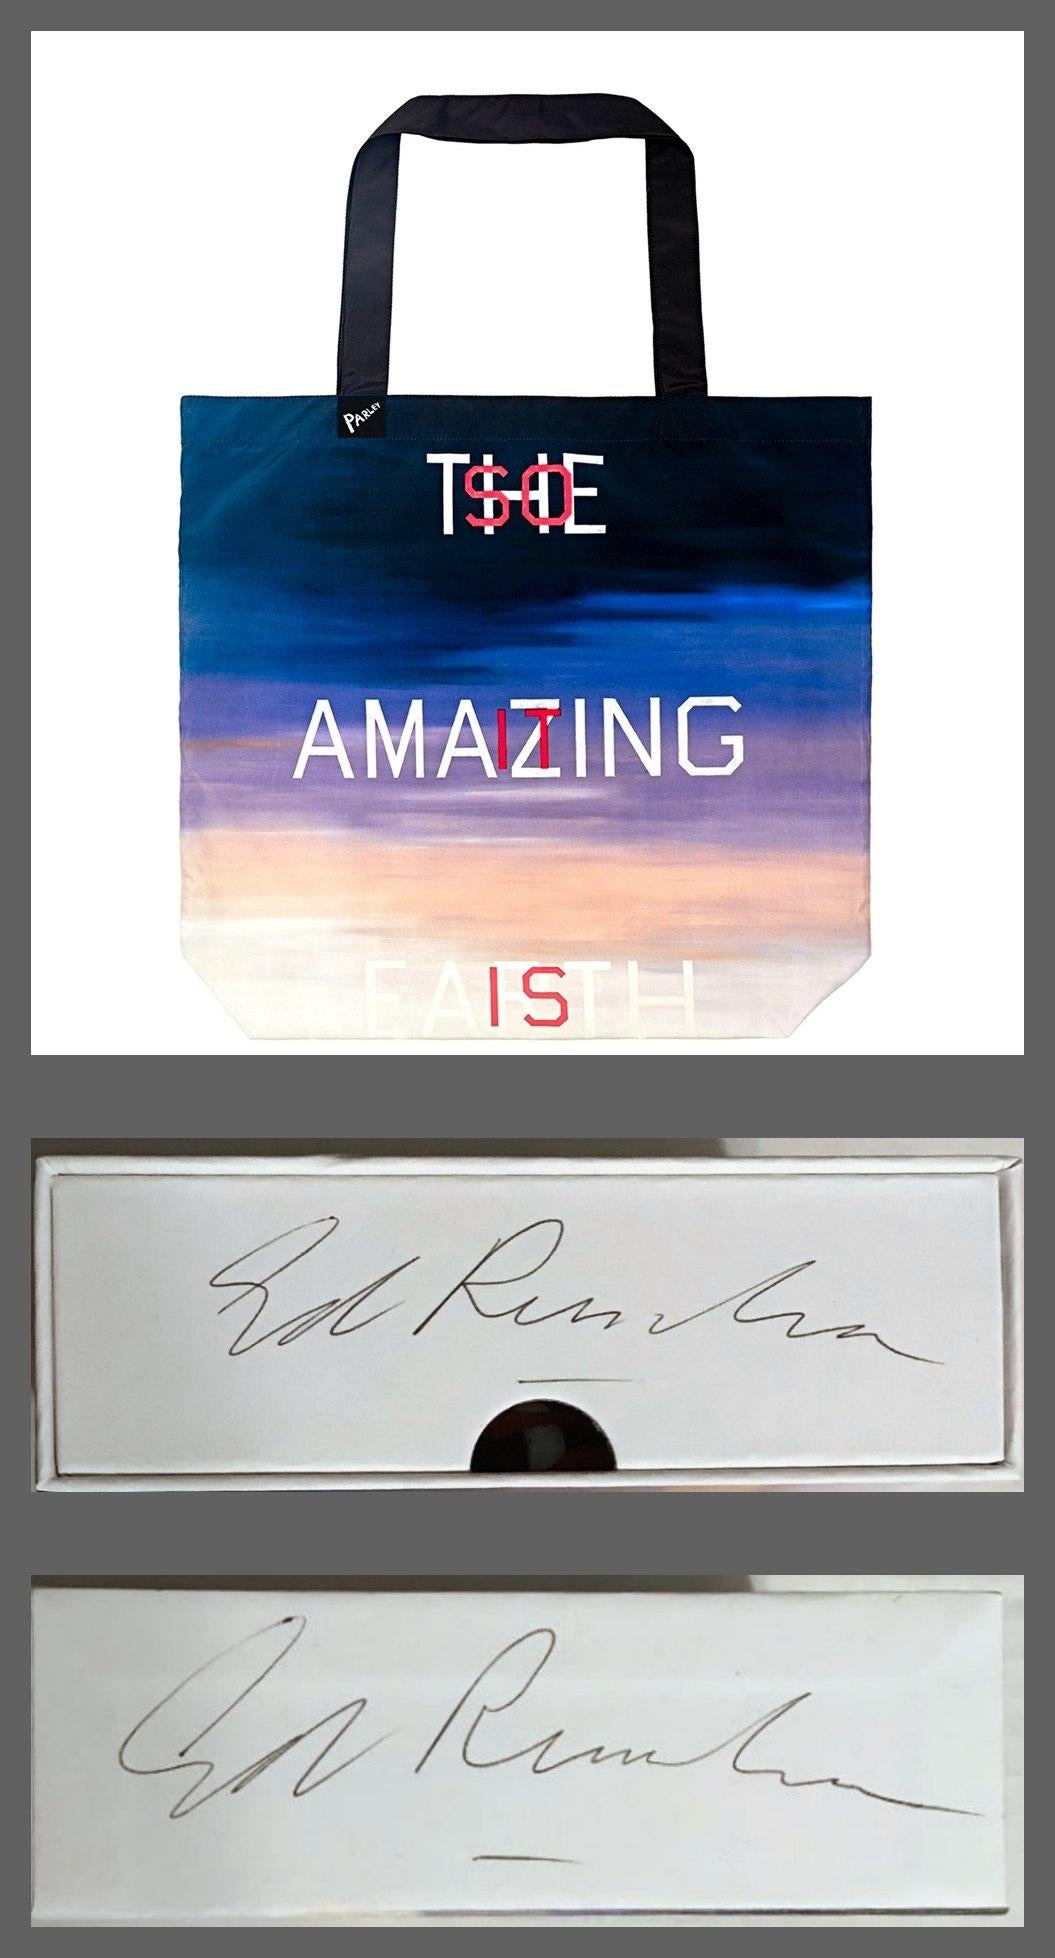 Ed Ruscha
The Amazing Earth, dans une boîte cadeau signée à la main deux fois par Ed Ruscha, vers 2017.
Sac marin réutilisable créé à partir de 5 bouteilles en plastique interceptées. Dans un coffret de présentation, signée deux fois (2x) par Ed